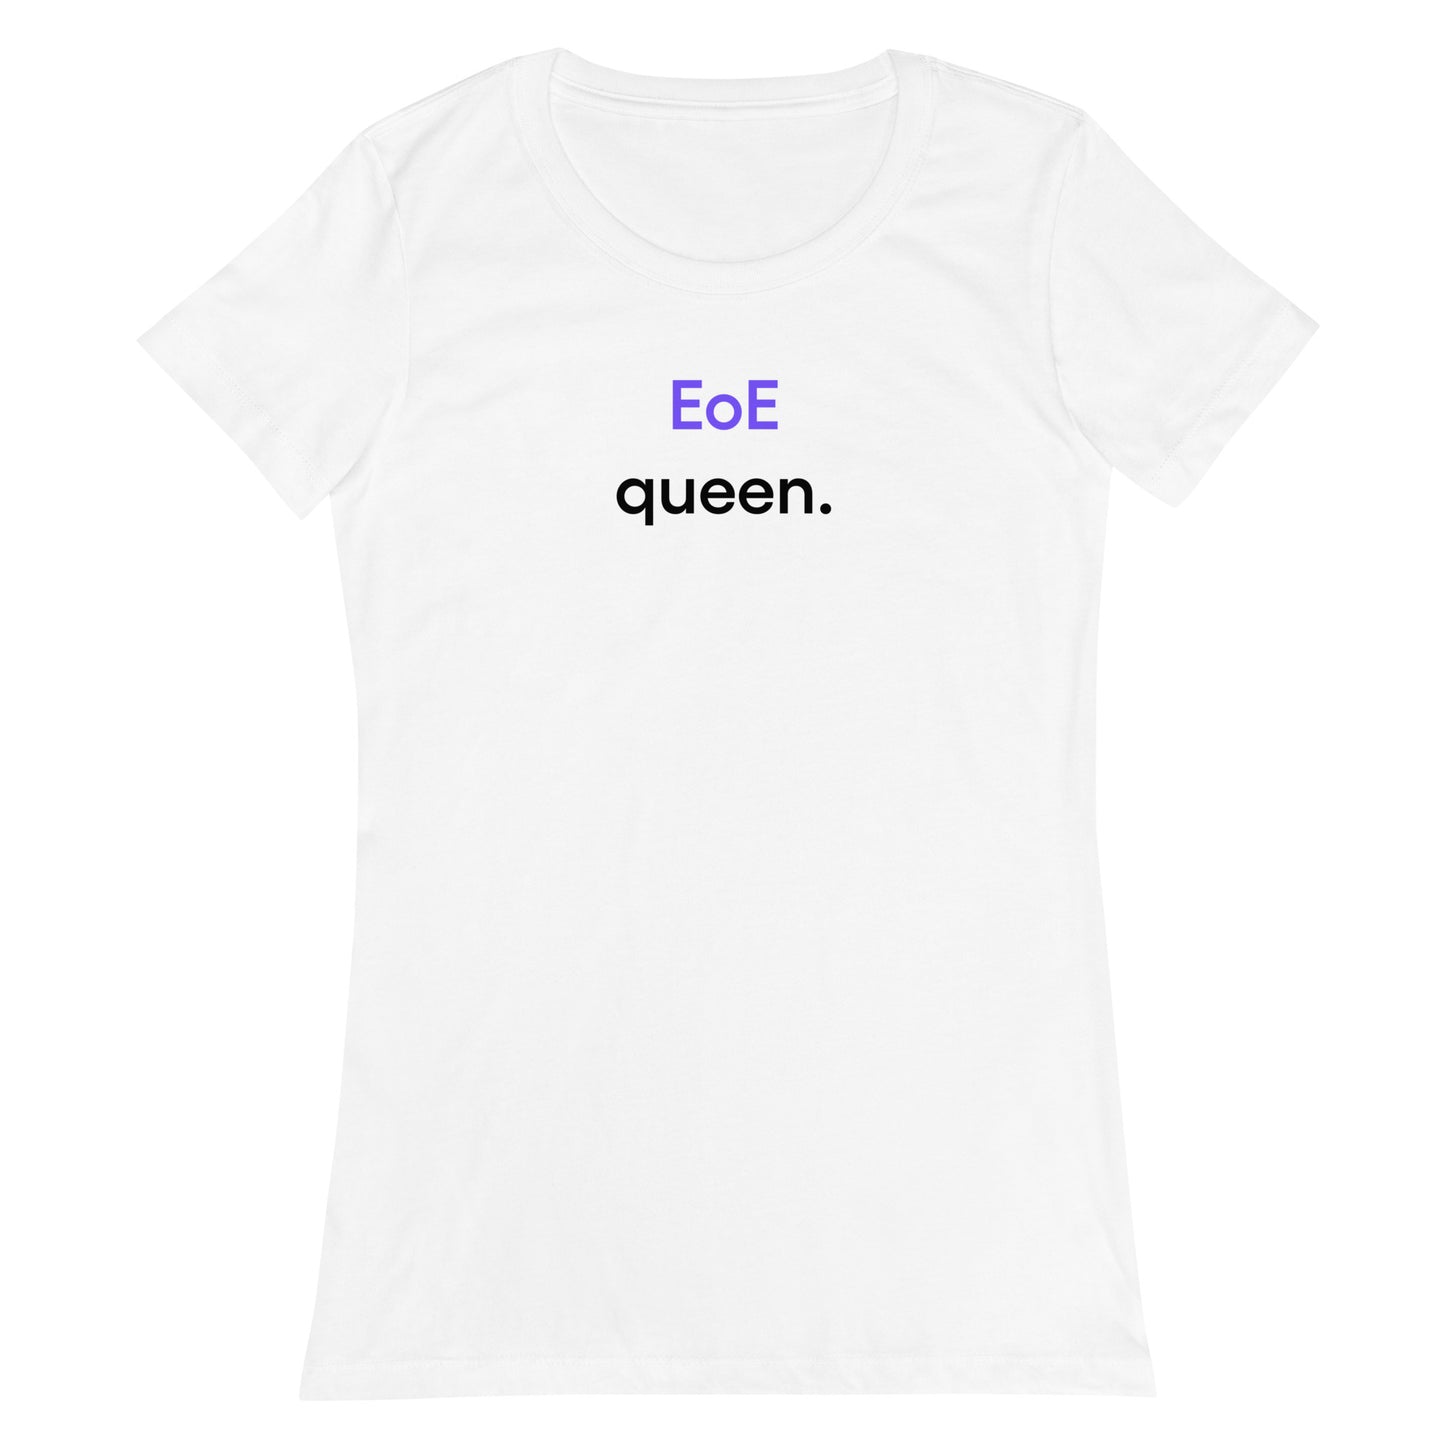 EoE queen | Women’s fitted t-shirt